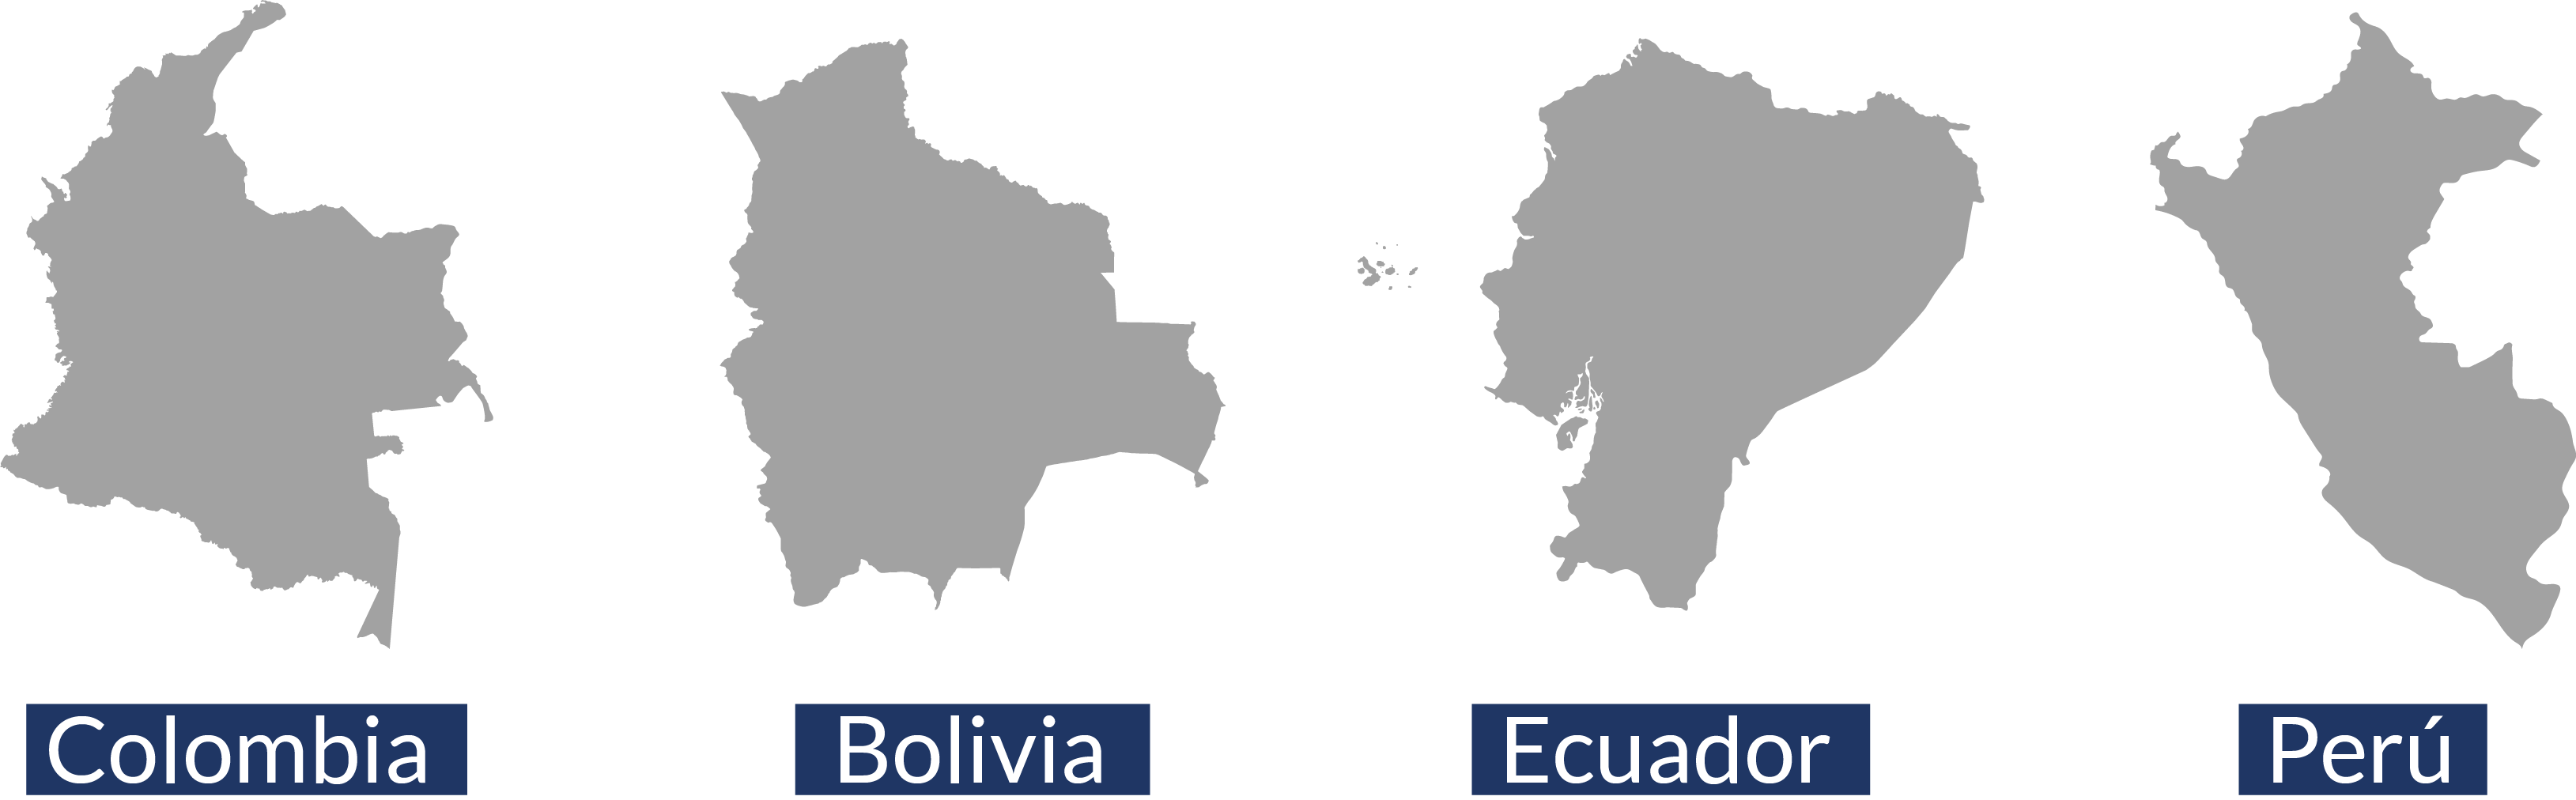 colombia, bolivia, ecuador, peru